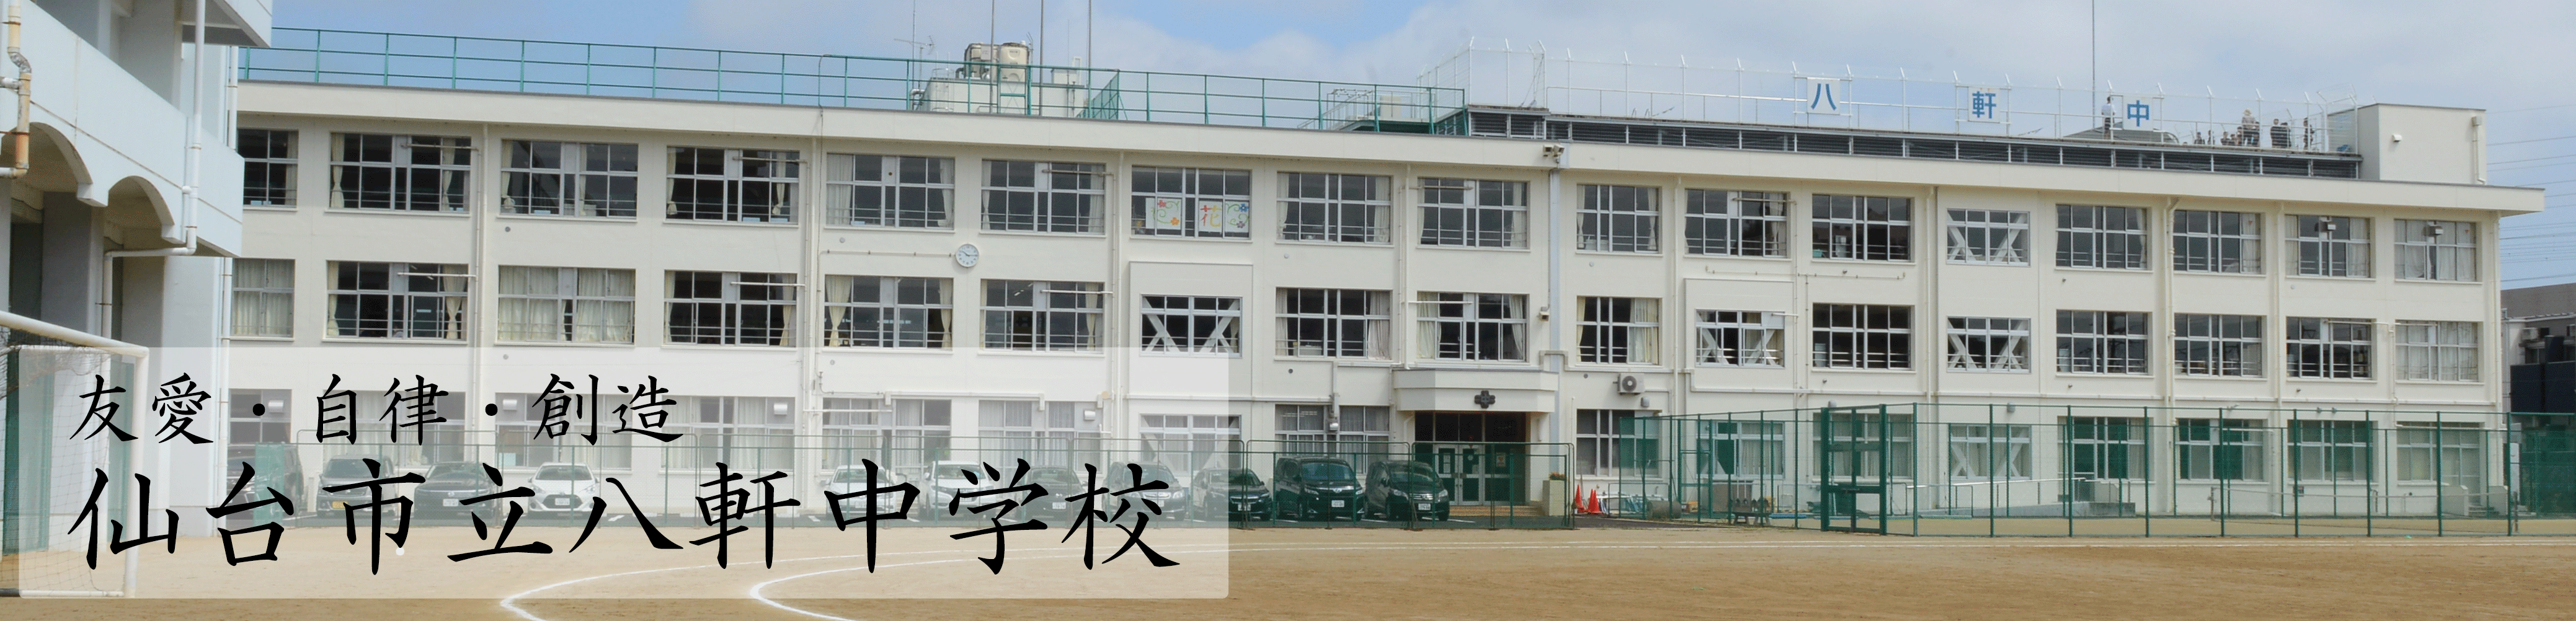 仙台市立八軒中学校